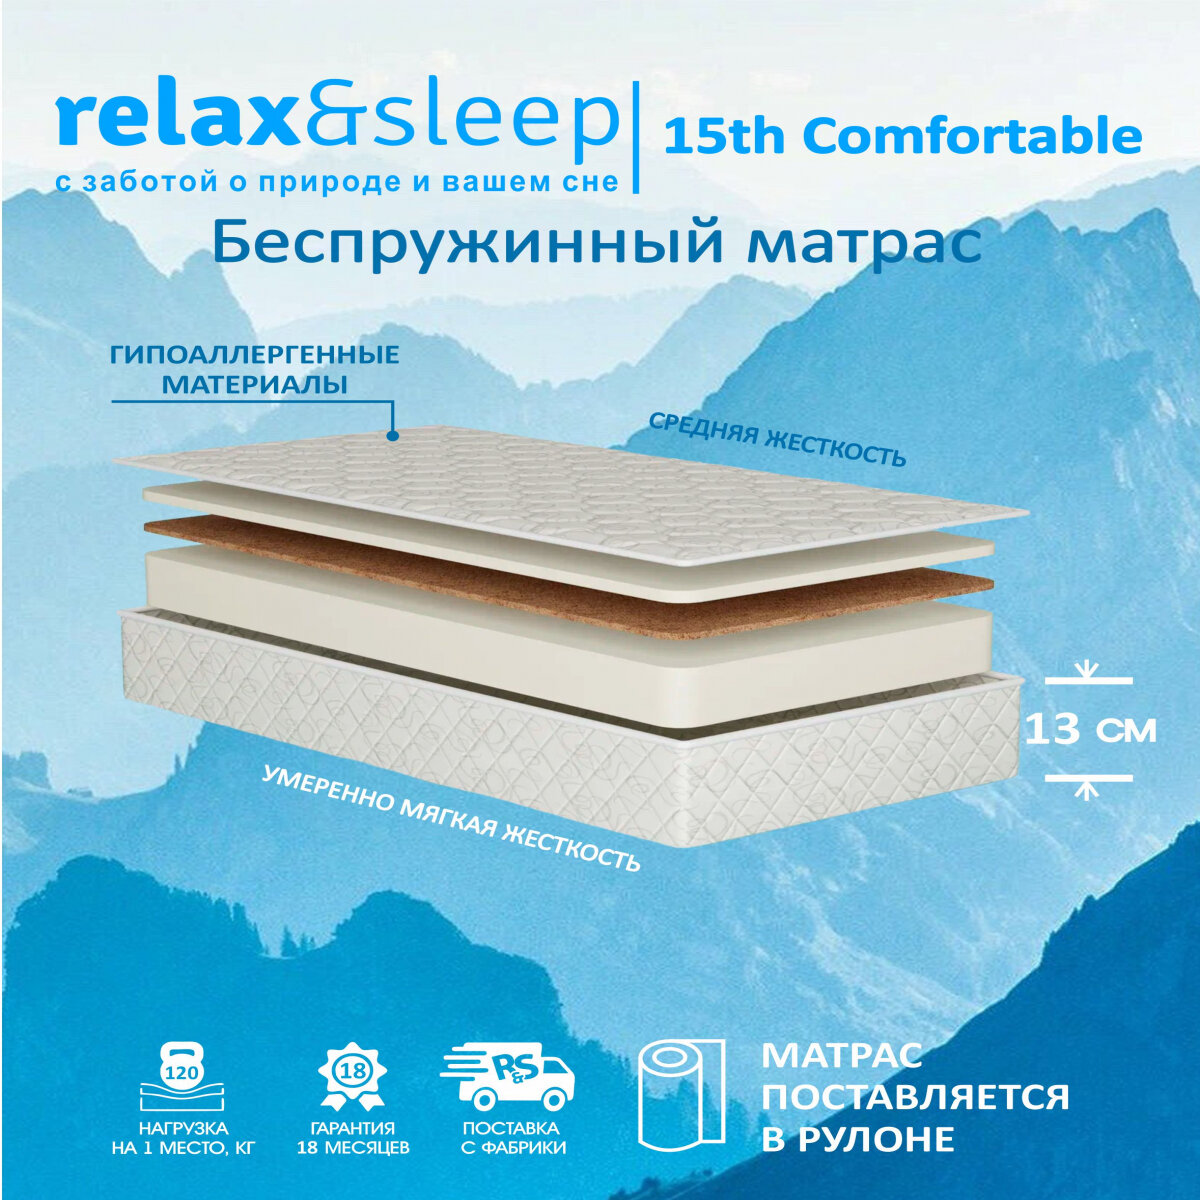 Матрас Relax&Sleep ортопедический беспружинный 15h Comfortable (60 / 190)